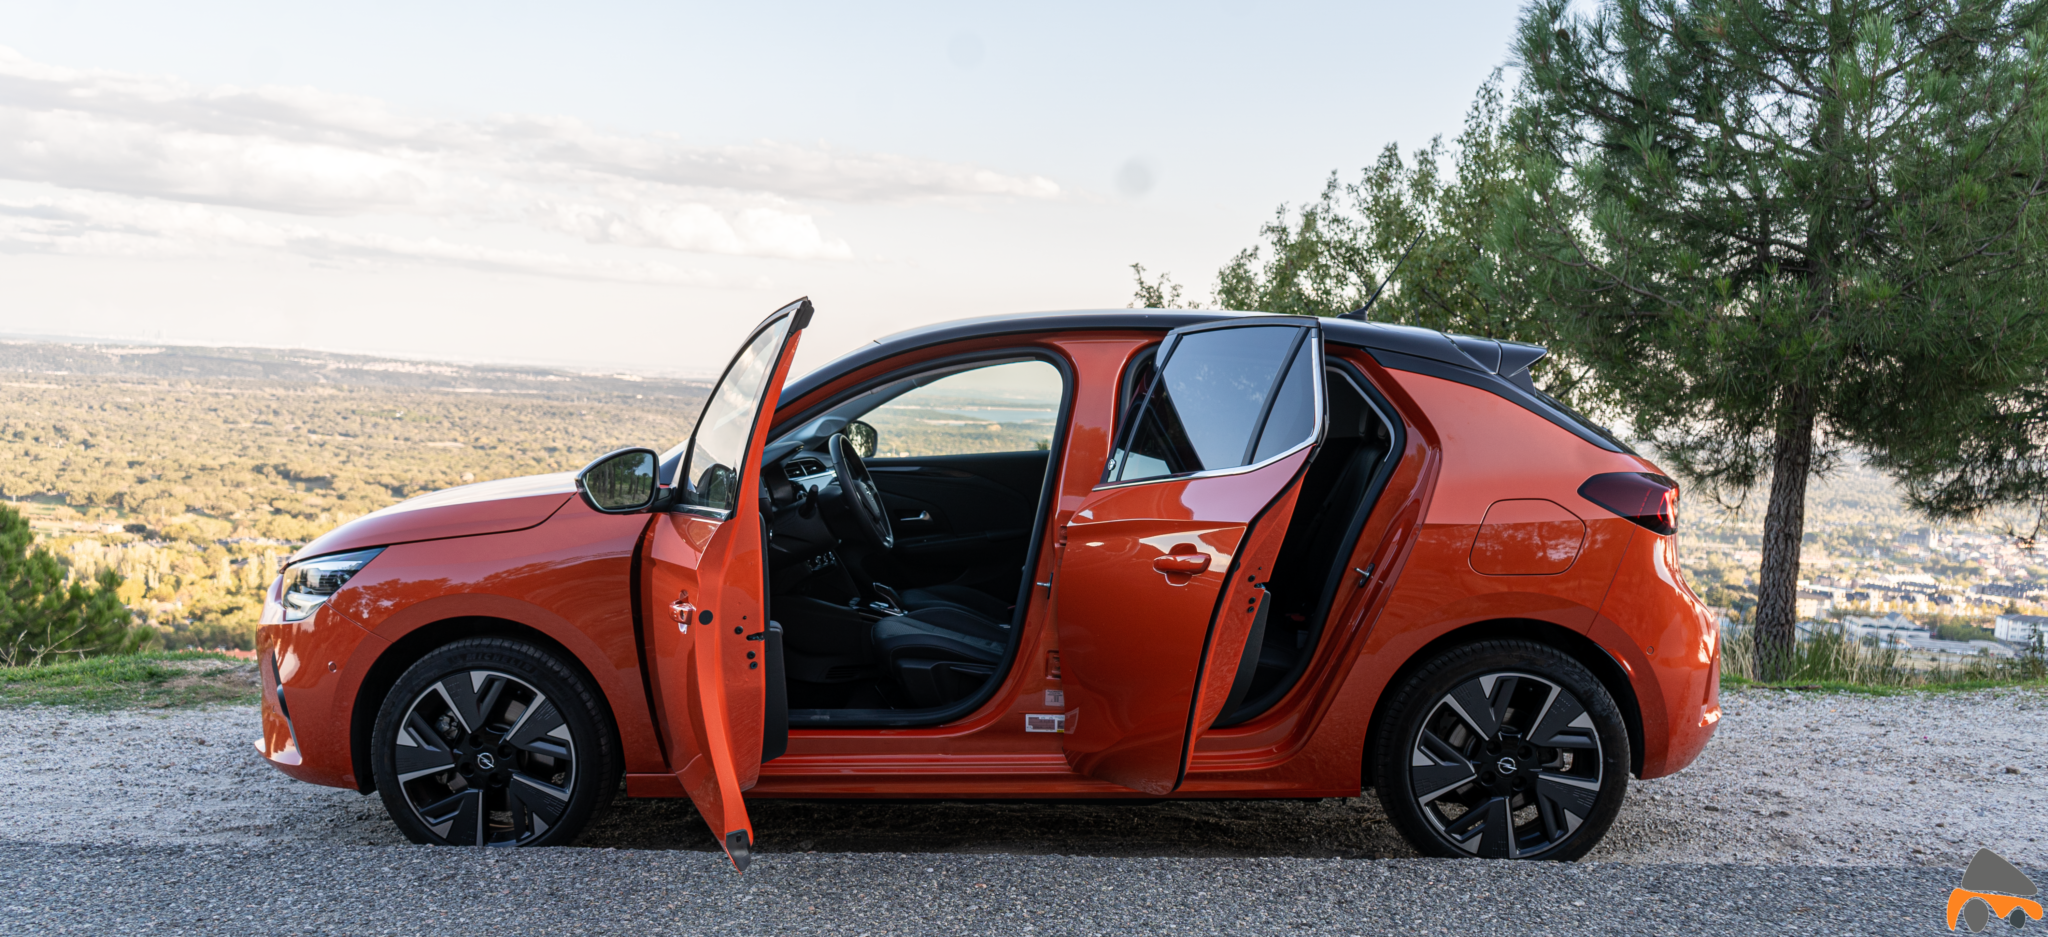 Apertura de puertas Opel Corsa e - Prueba Opel Corsa-e 2020: El primer coche eléctrico de Opel tiene 136 CV y 280 km reales de autonomía